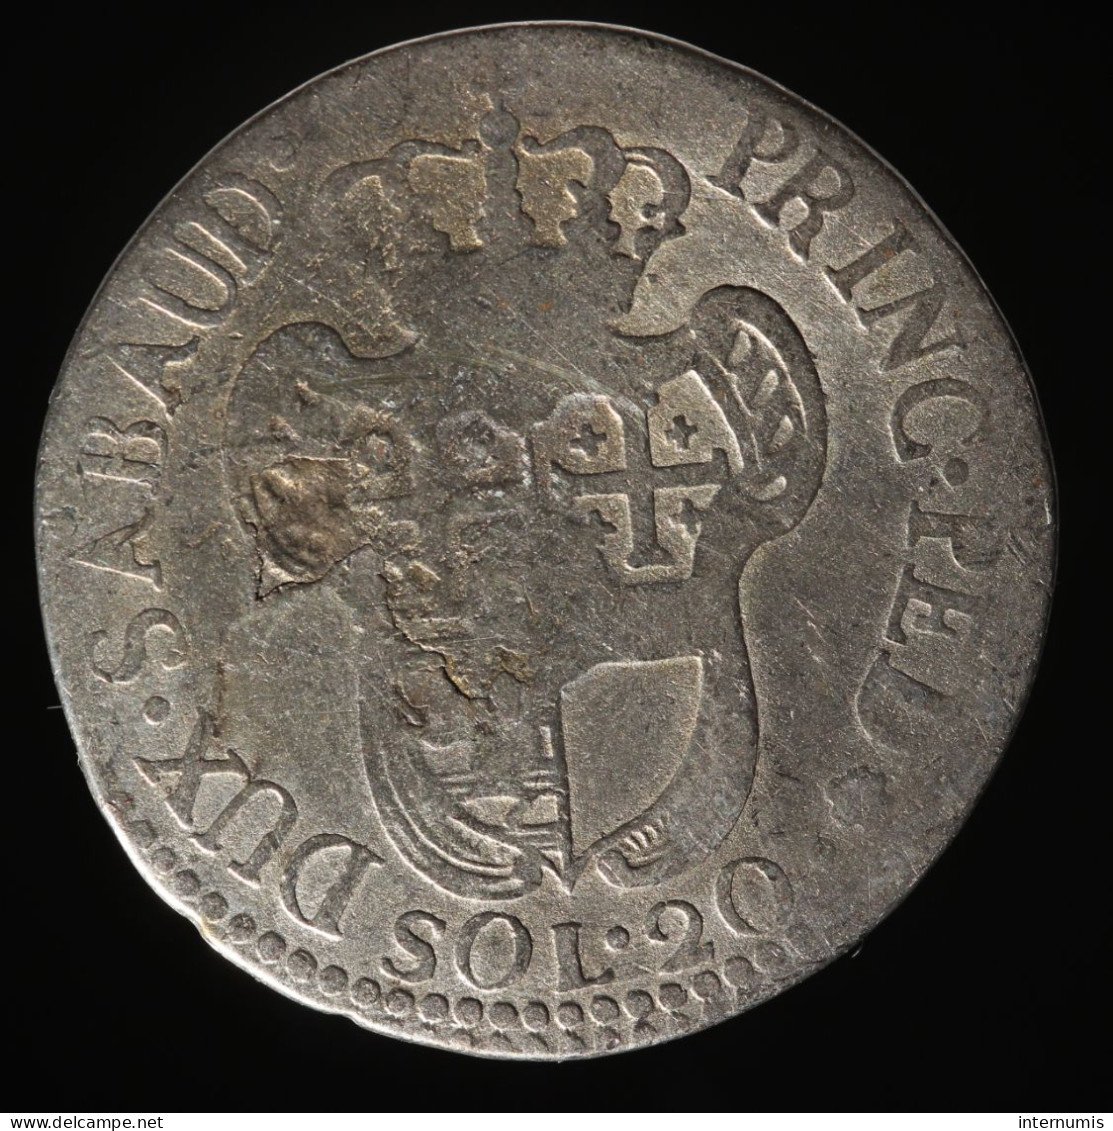  Savoie / Savoy, Victor-Amédée II, 20 Soldi, 1796, , Billon, TB (F),
KM#94, MIR# 990  - Italian Piedmont-Sardinia-Savoie